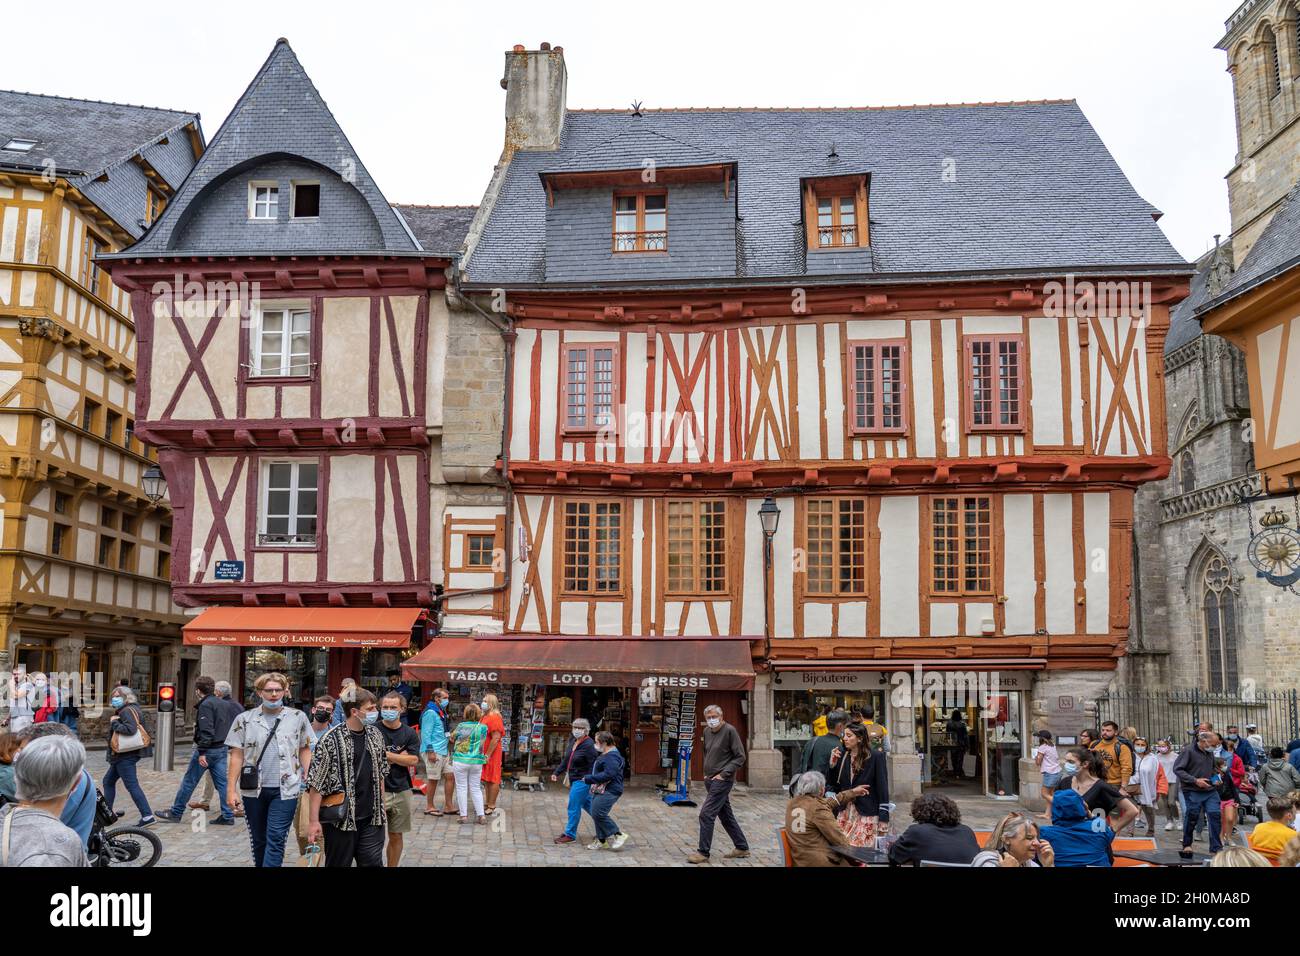 Fachwerkhäuser in der Altstadt von Vannes, Bretagne, Frankreich  |  half-timbered houses at the old town in Vannes, Brittany, France Stock Photo